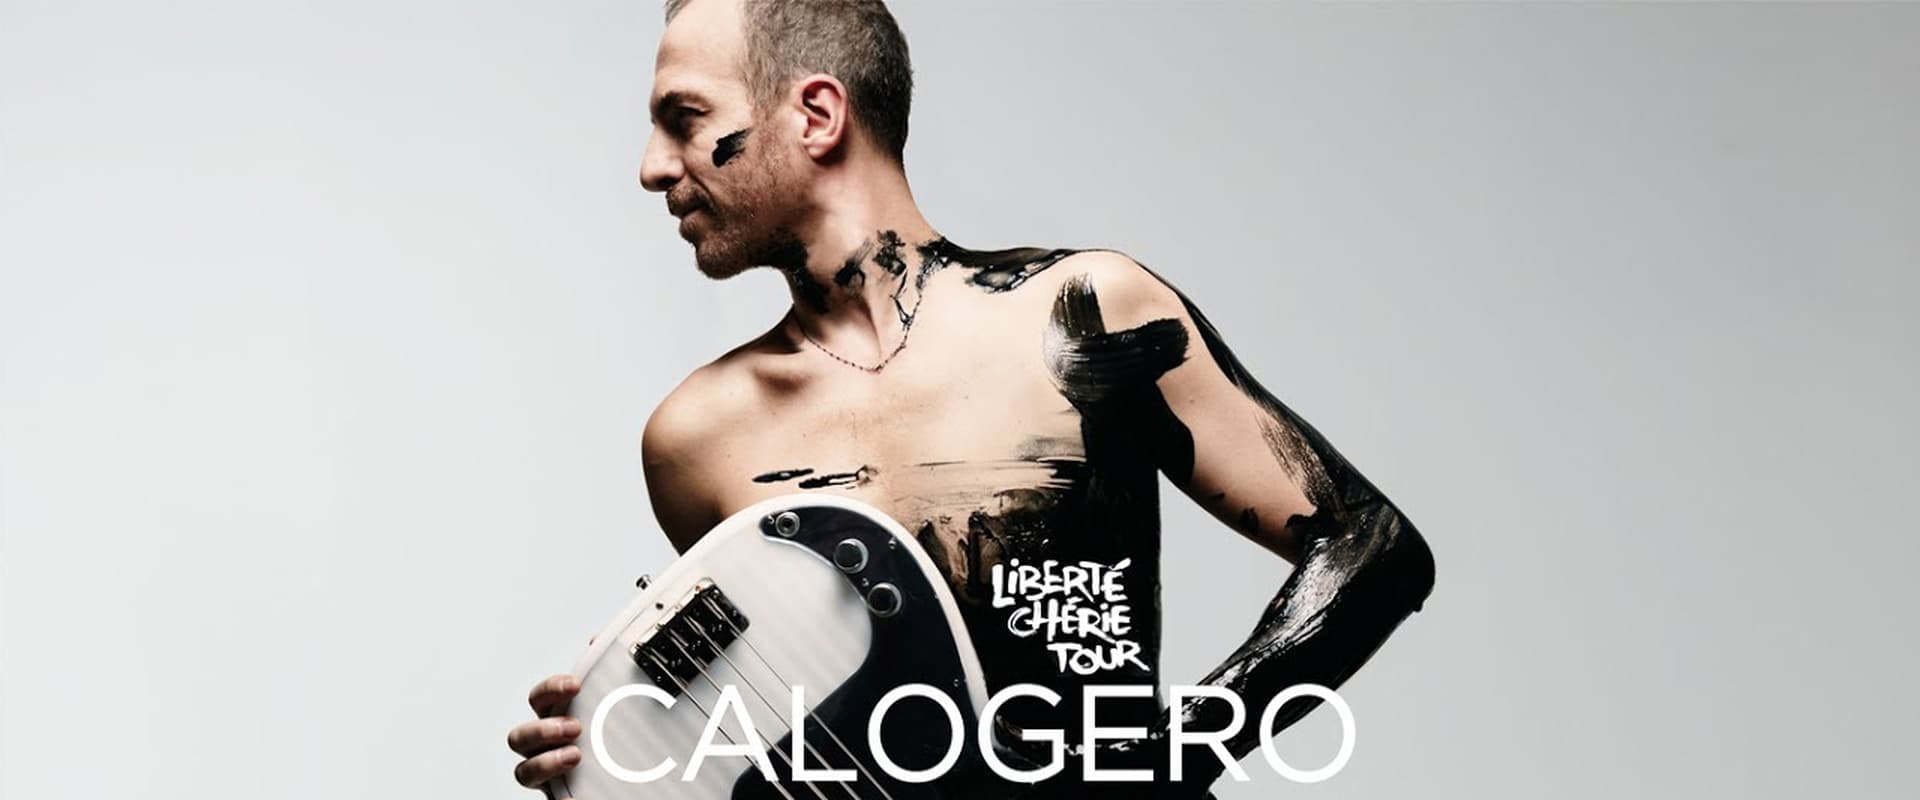 Calogero - Liberté Chérie Tour